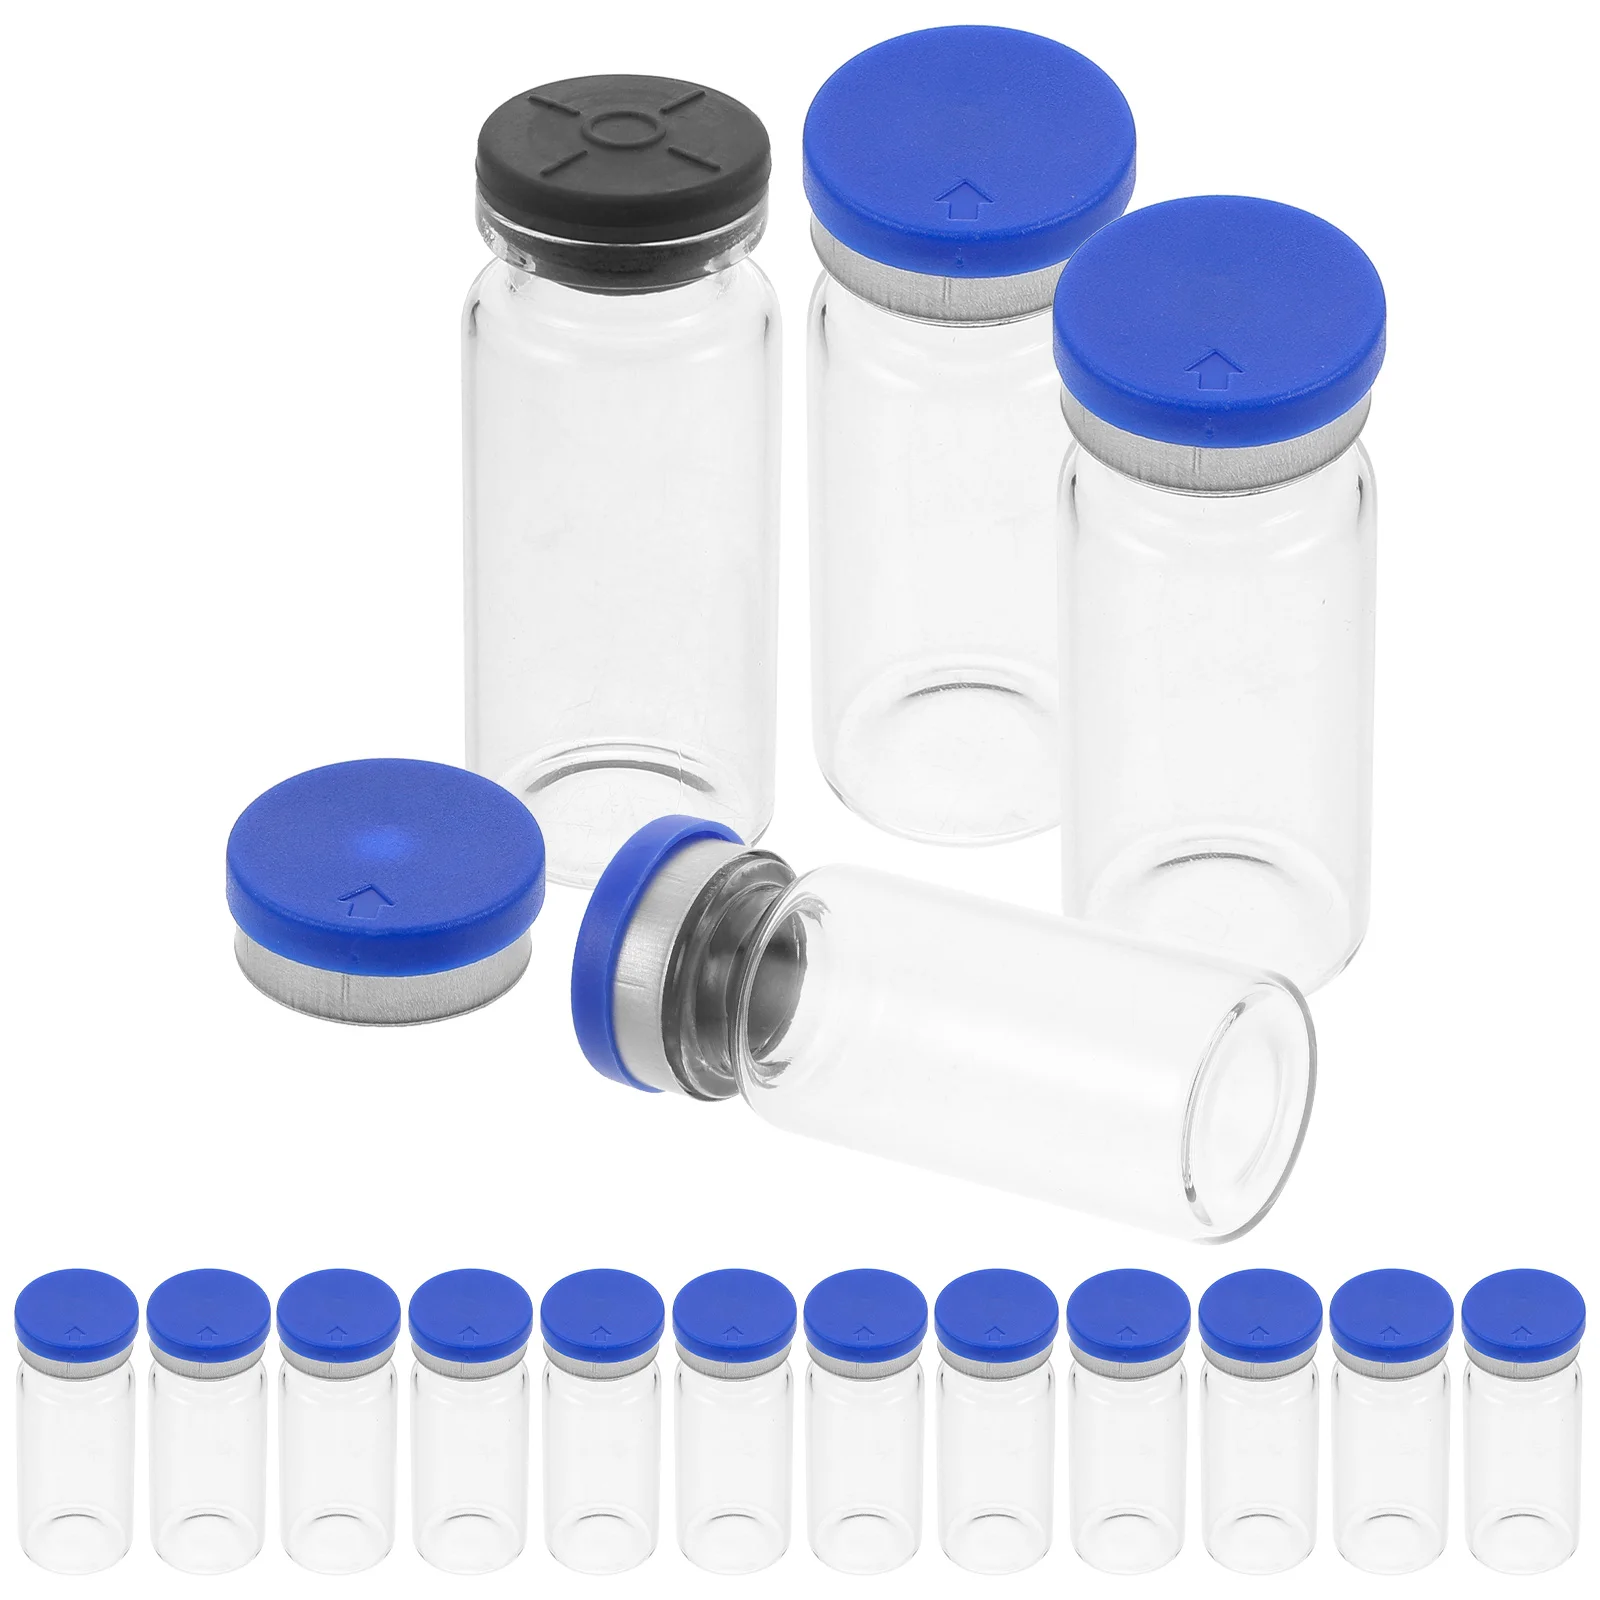 

20 Pcs Travel Size Liquid Containers Freeze-dried Powder Bottle Vial Cap Transparent Empty Glass Clear Vials